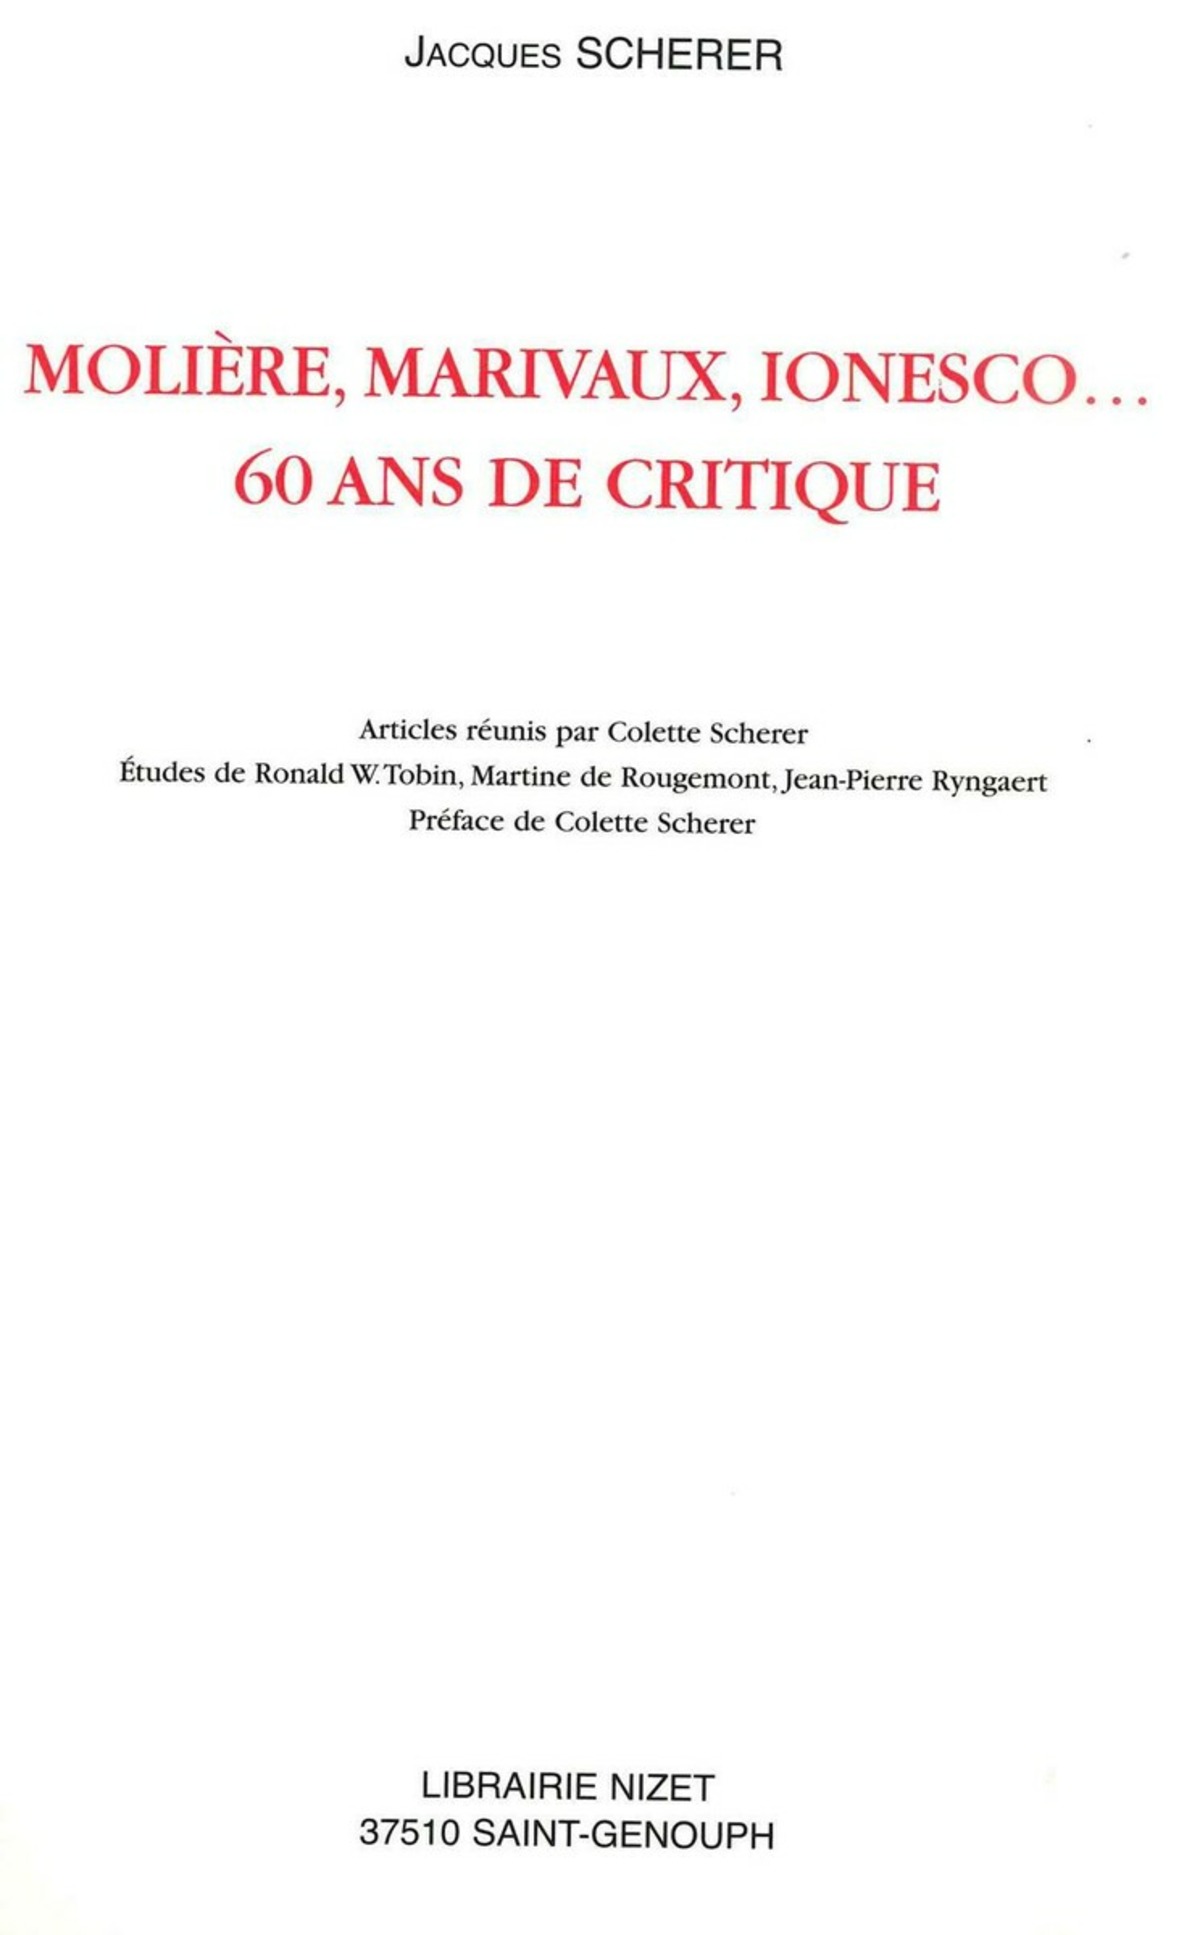 Molière, Marivaux, Ionesco…60 ans de critique